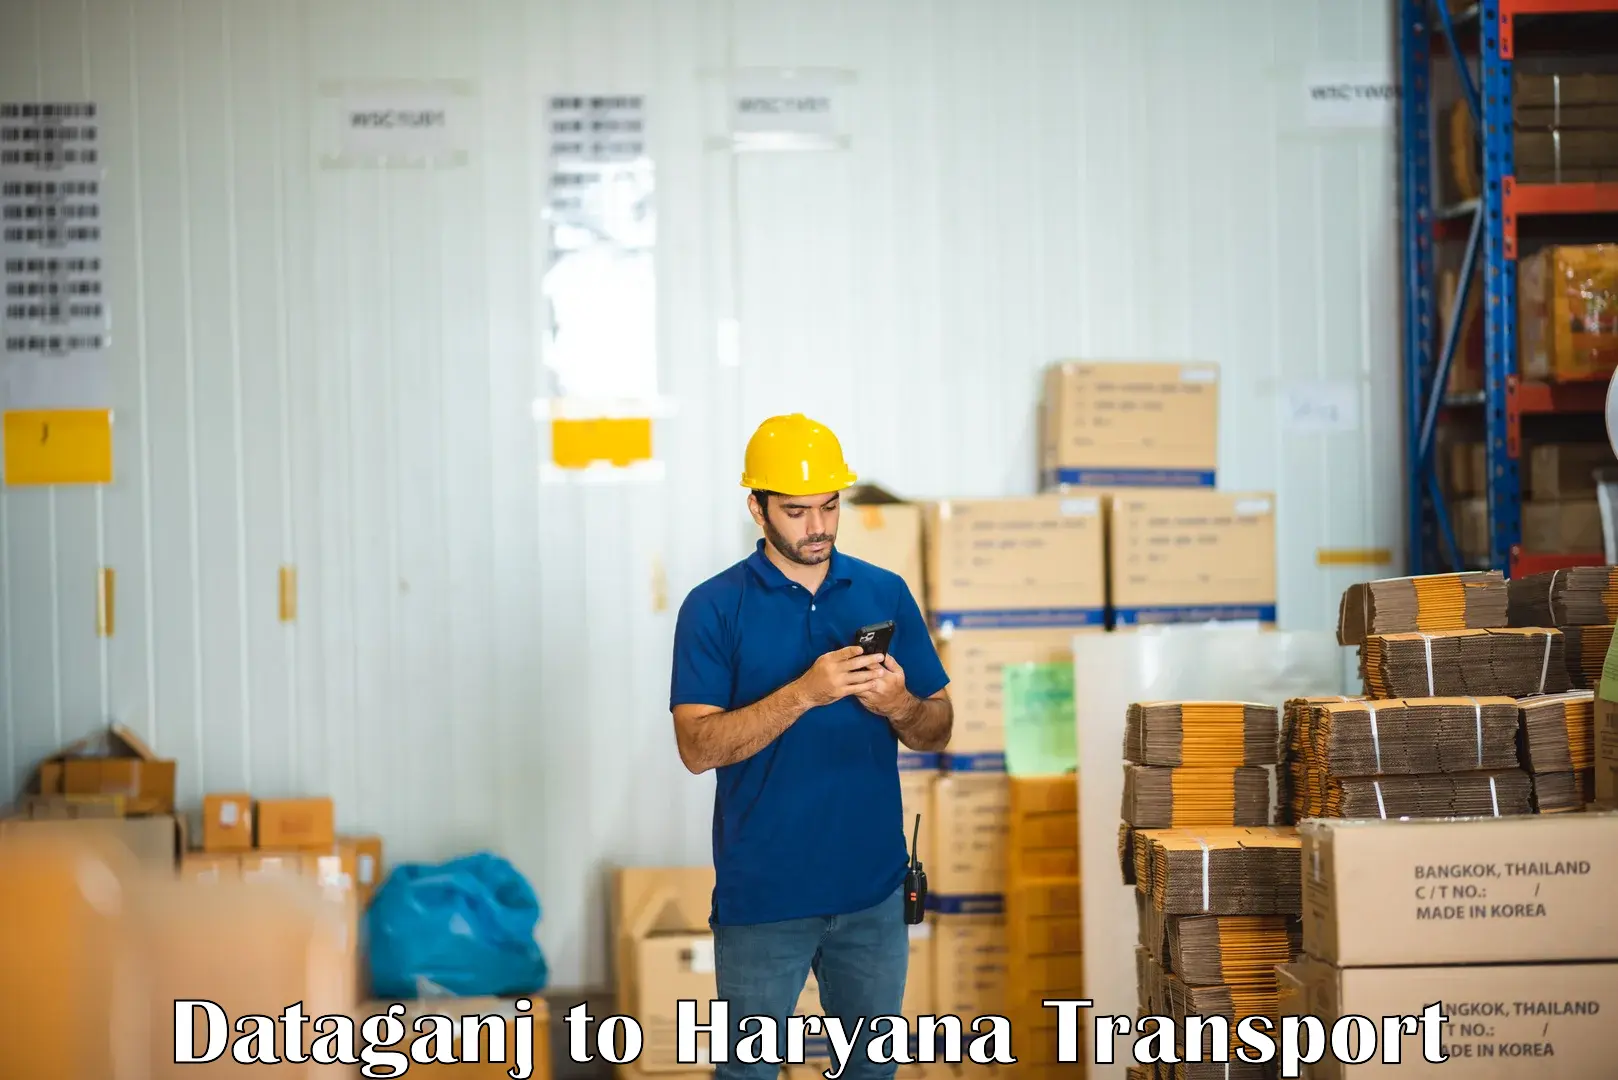 Two wheeler parcel service Dataganj to Hansi